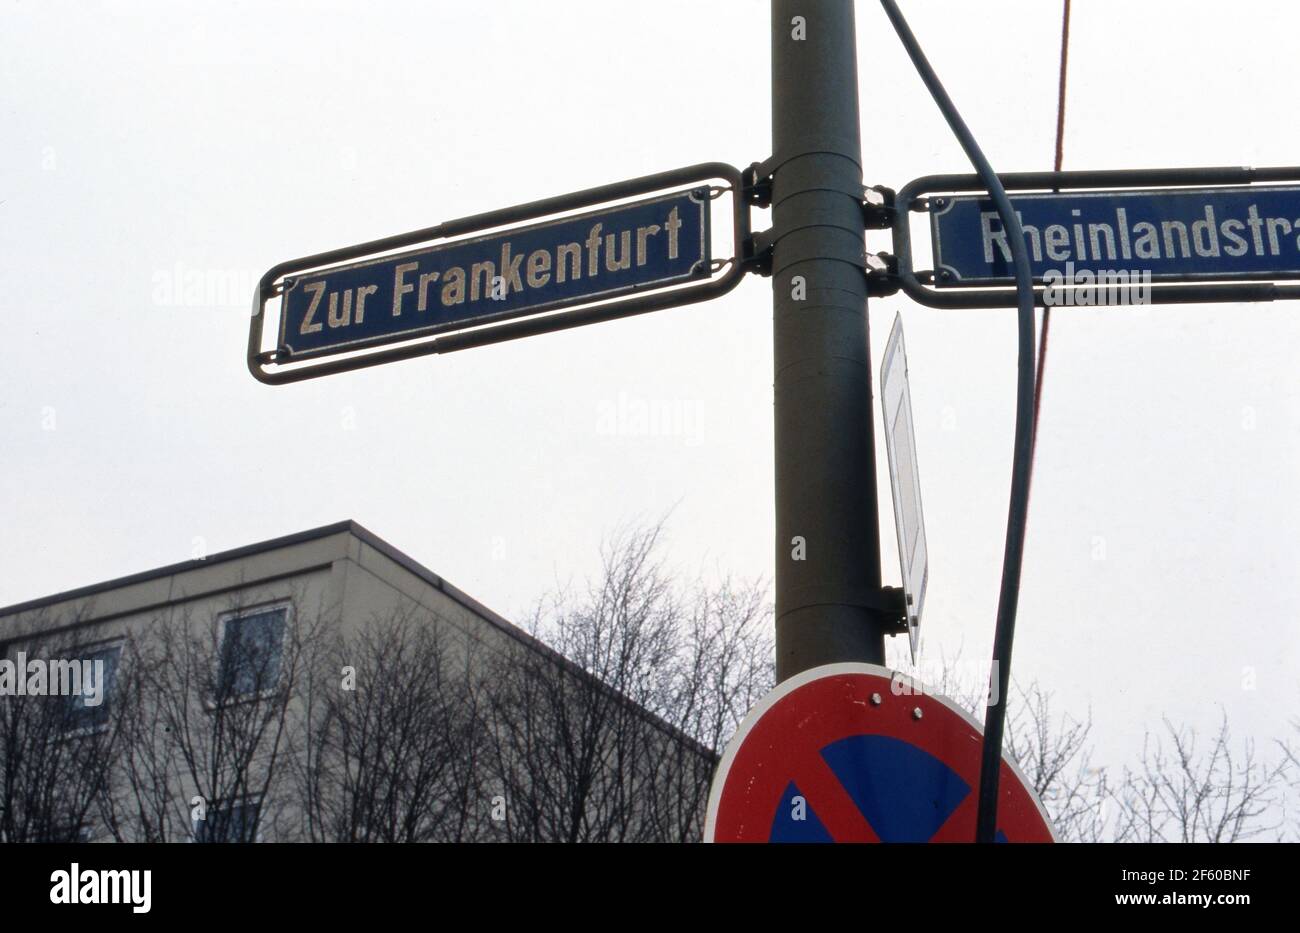 Straßenschild 'Zur Frankenfurt' und 'Rheinlandstraße'  in der Umgebung nach einem Chemieunfall beim Unternehmen Hoechst, Deutschland 1993. Stock Photo